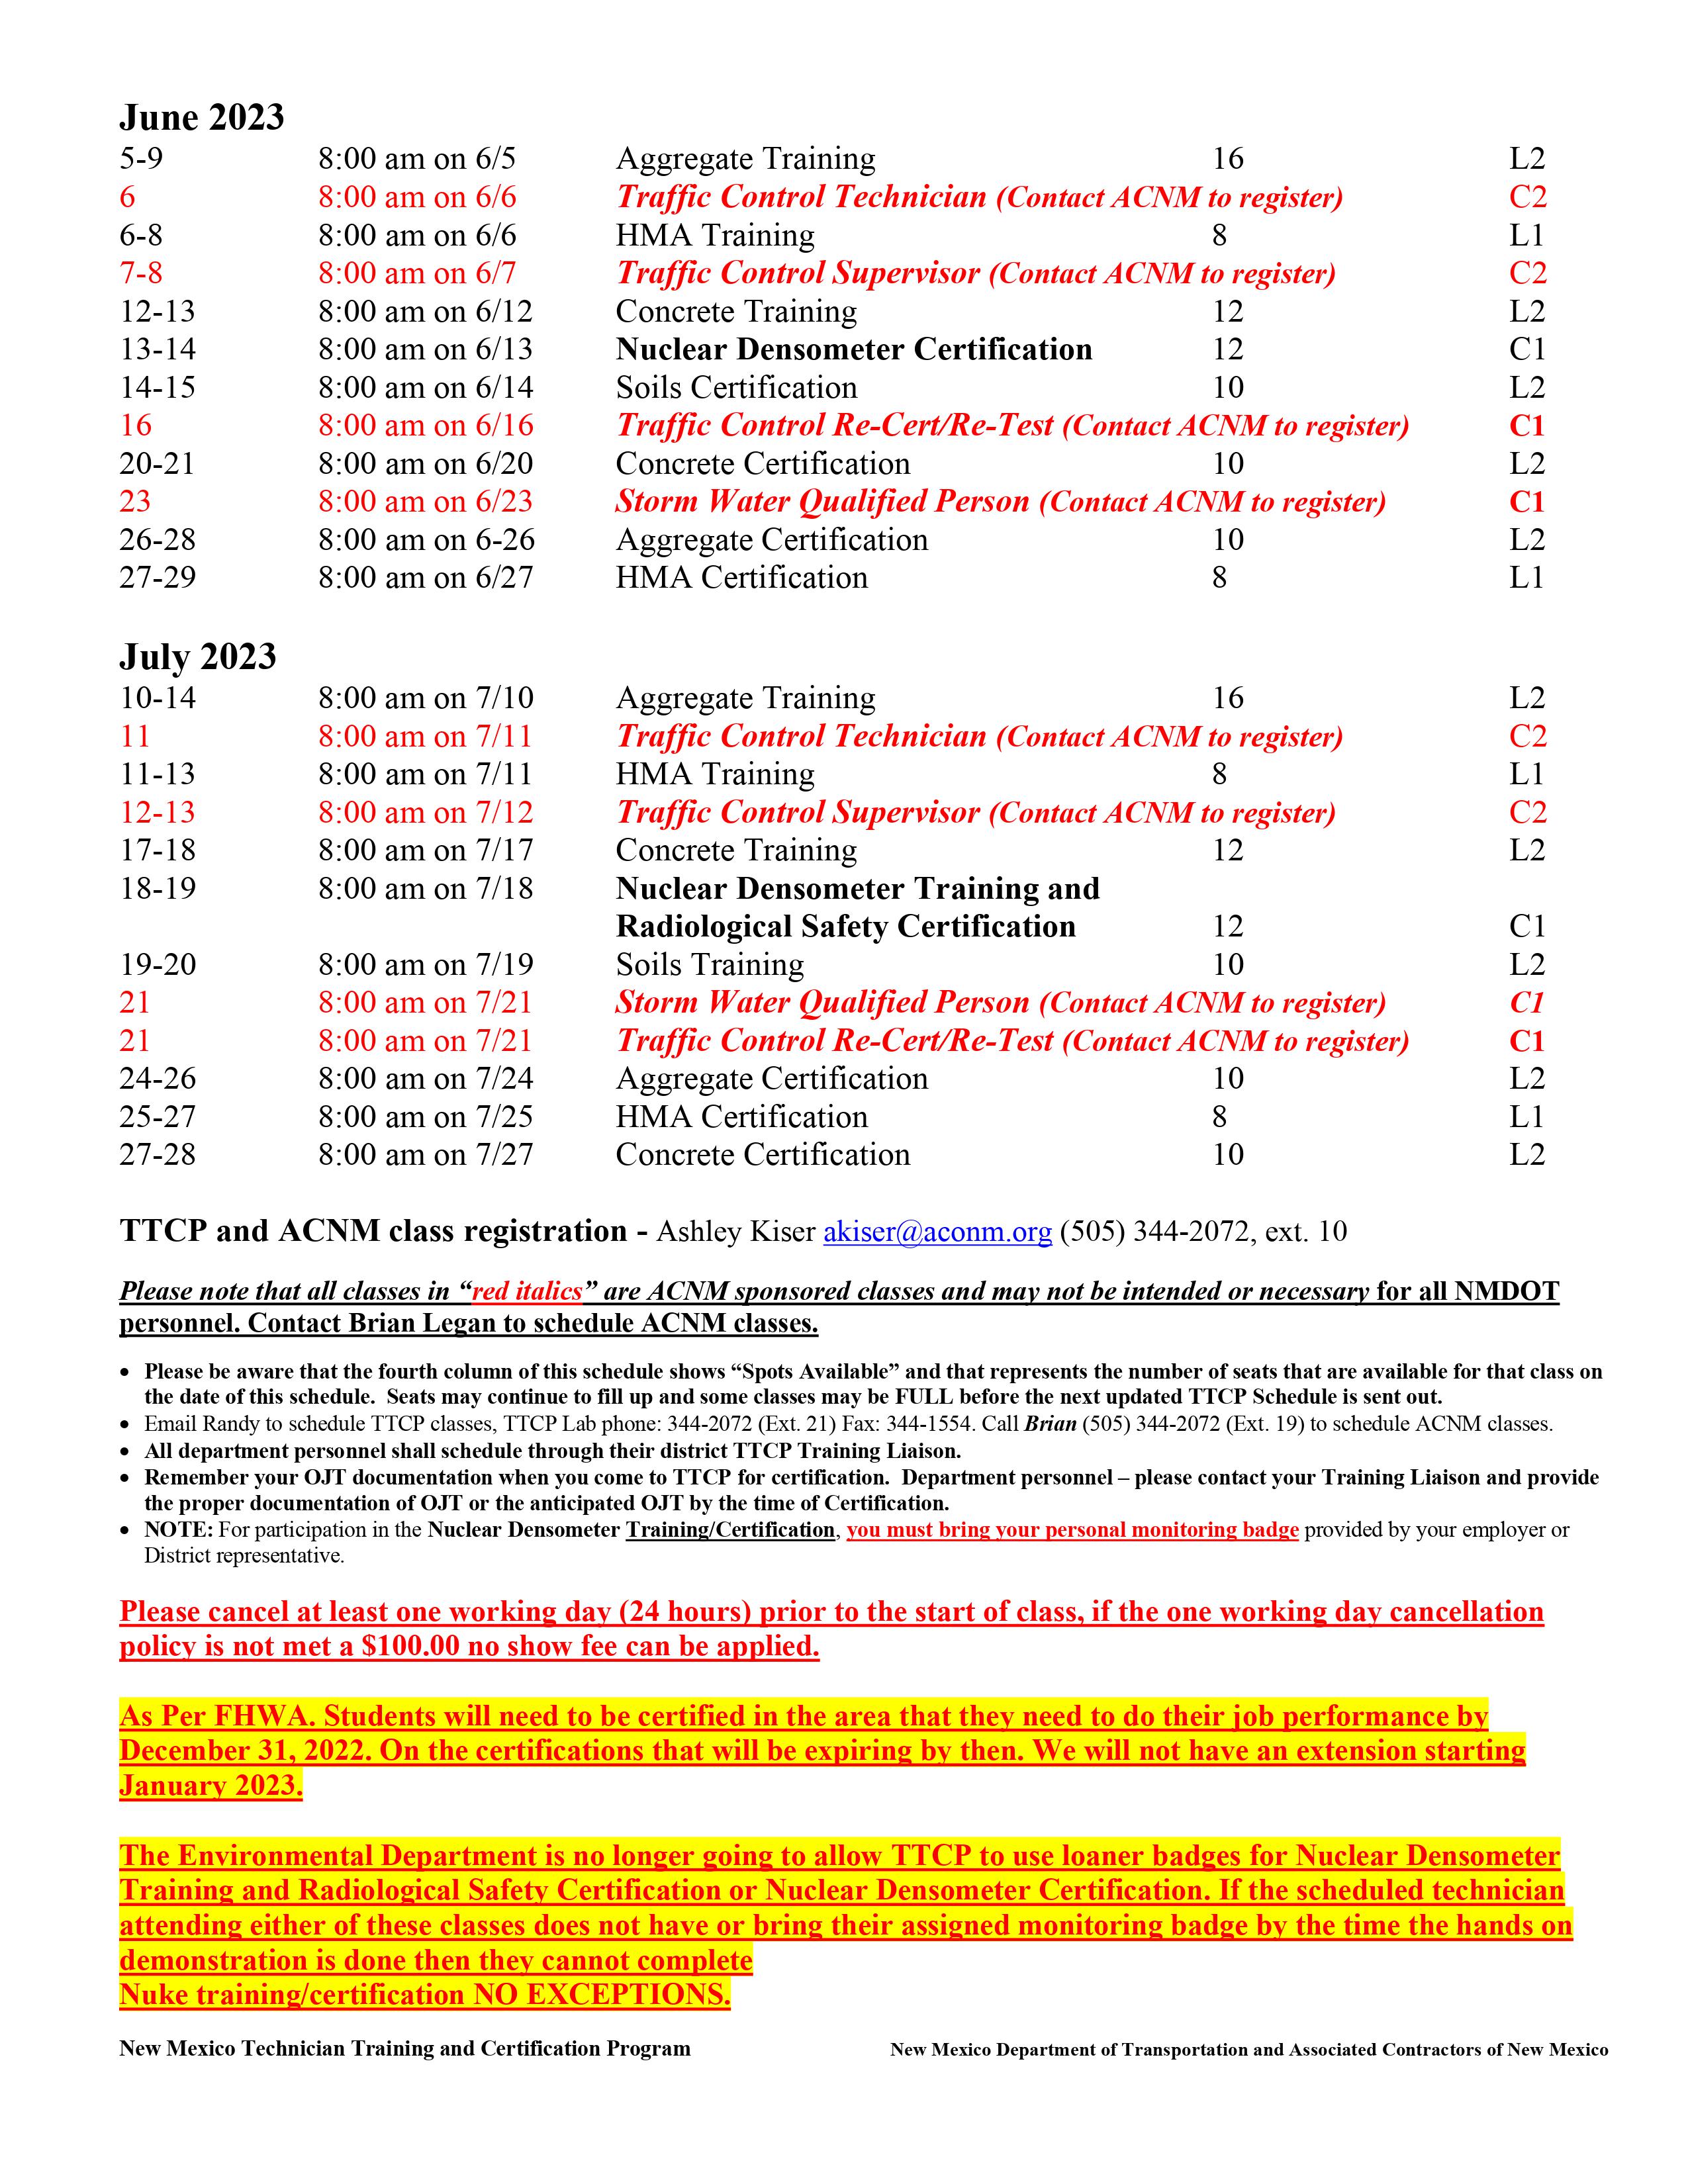 TTCP Schedule - 3-16-23-2